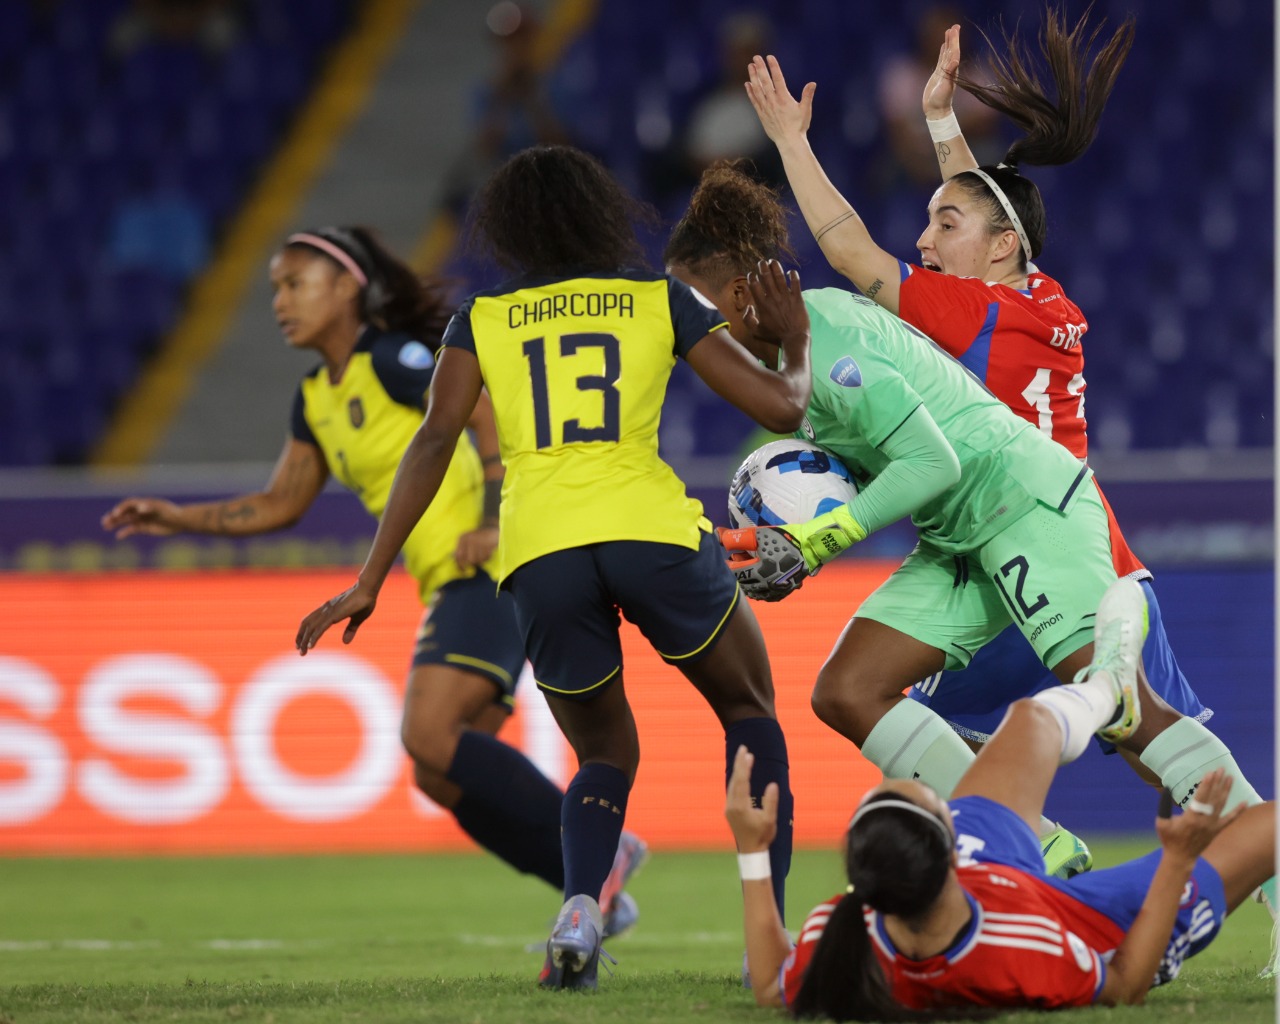 Ecuador complica su clasificación al caer ante Chile